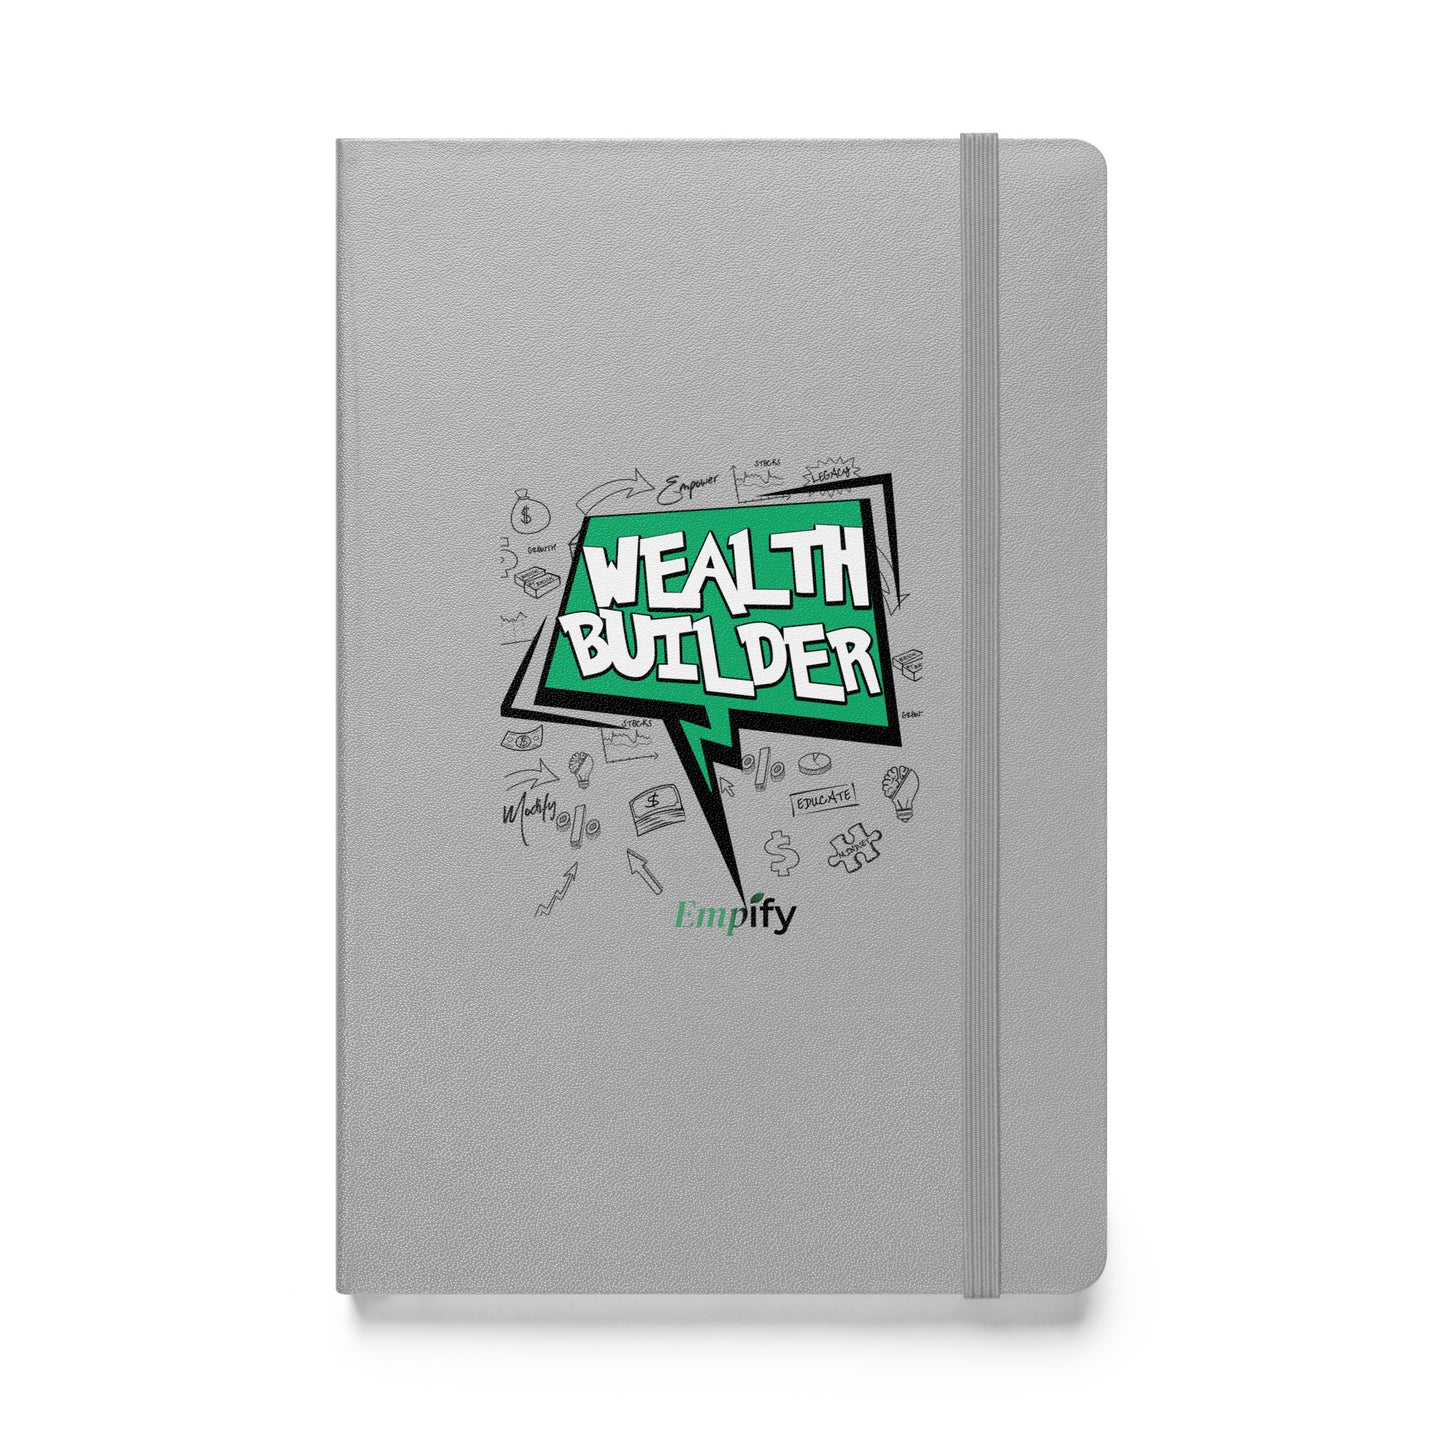 Wealth Builder Hardcover Bound Notebook